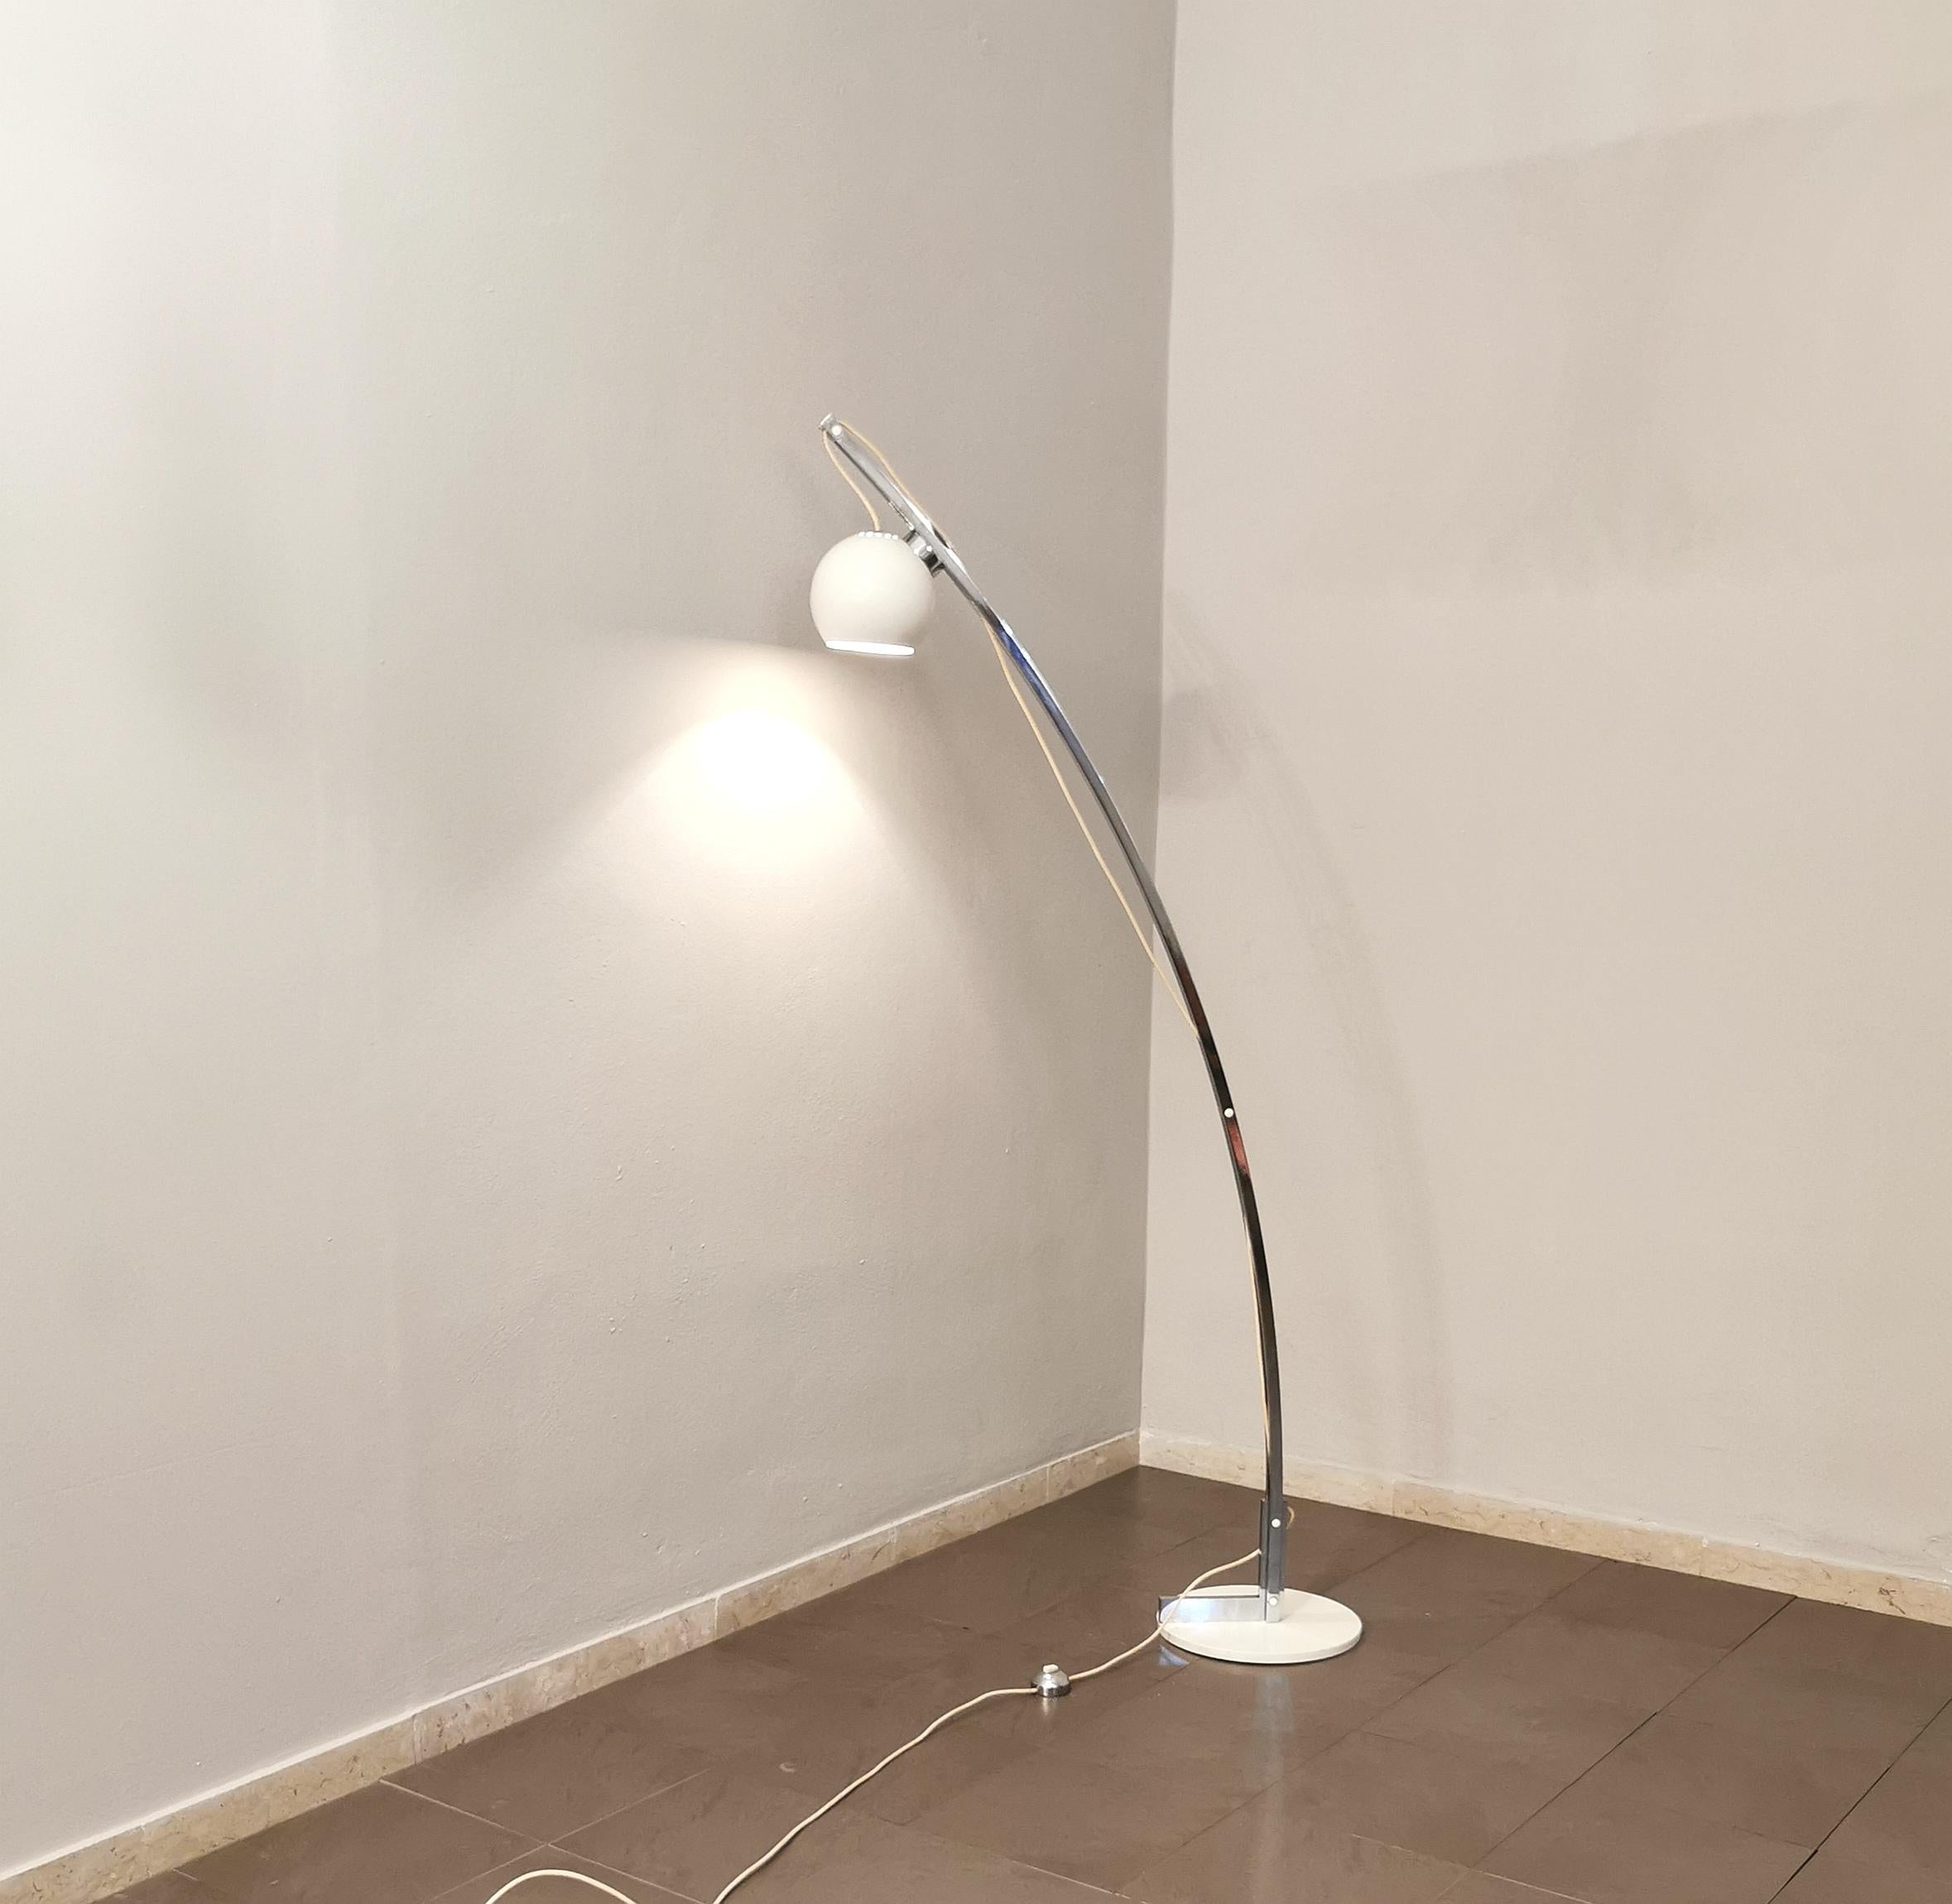 Lampadaire design dans le style de Goffredo Reggiani, produit en Italie dans les années 70. La lampe a une base circulaire en métal émaillé blanc, où se trouve une tige courbée en métal chromé, qui grâce à son fil et son aimant supporte un diffuseur